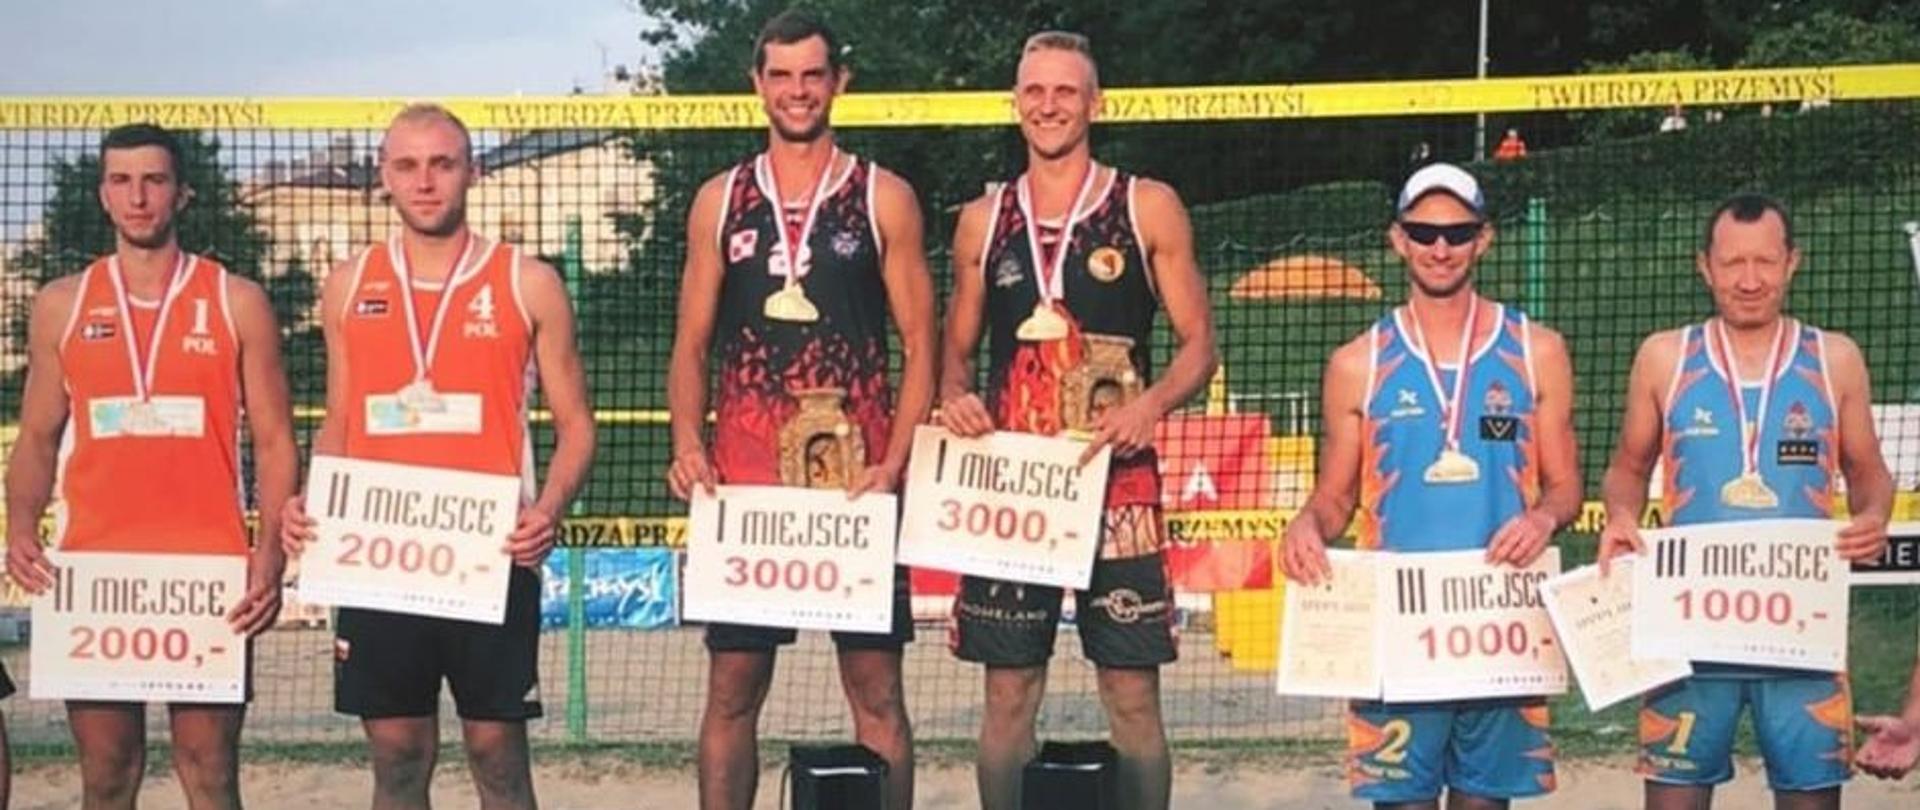  V Mistrzostwa Polski w Siatkówce Plażowej Służb Mundurowych – Twierdza Przemyśl 2021 - dekoracja uczestników, którzy zajęli czołowe miejsca.